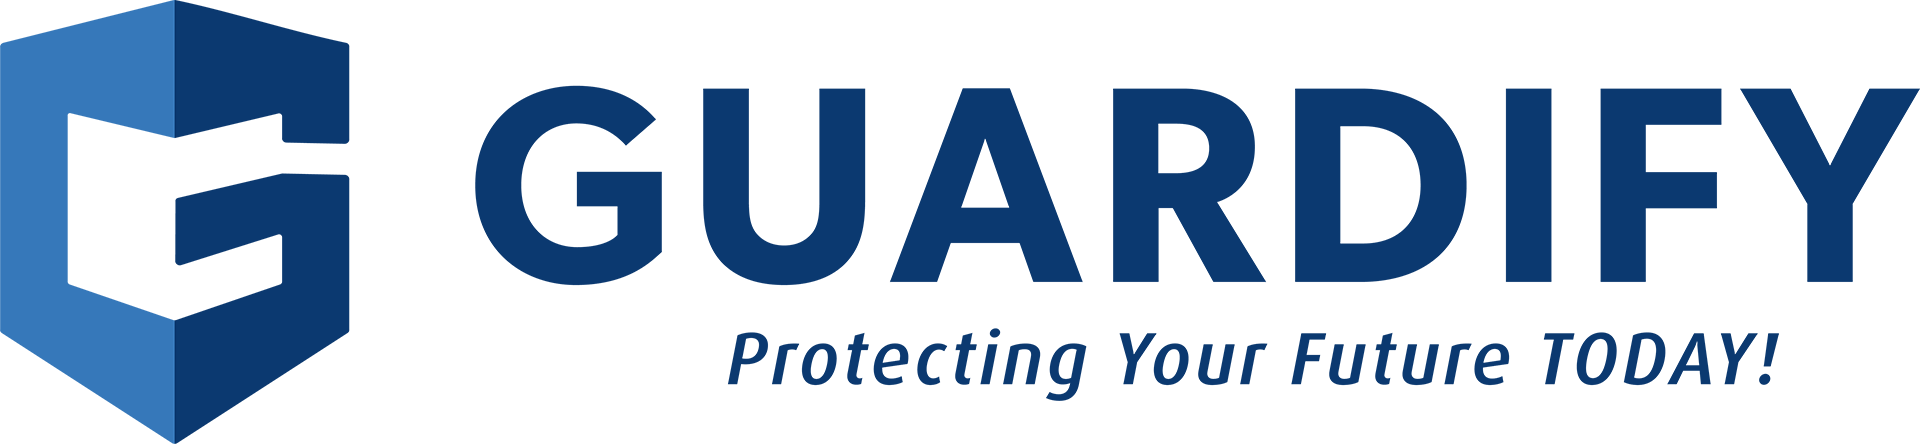 Guardify Insurance Group